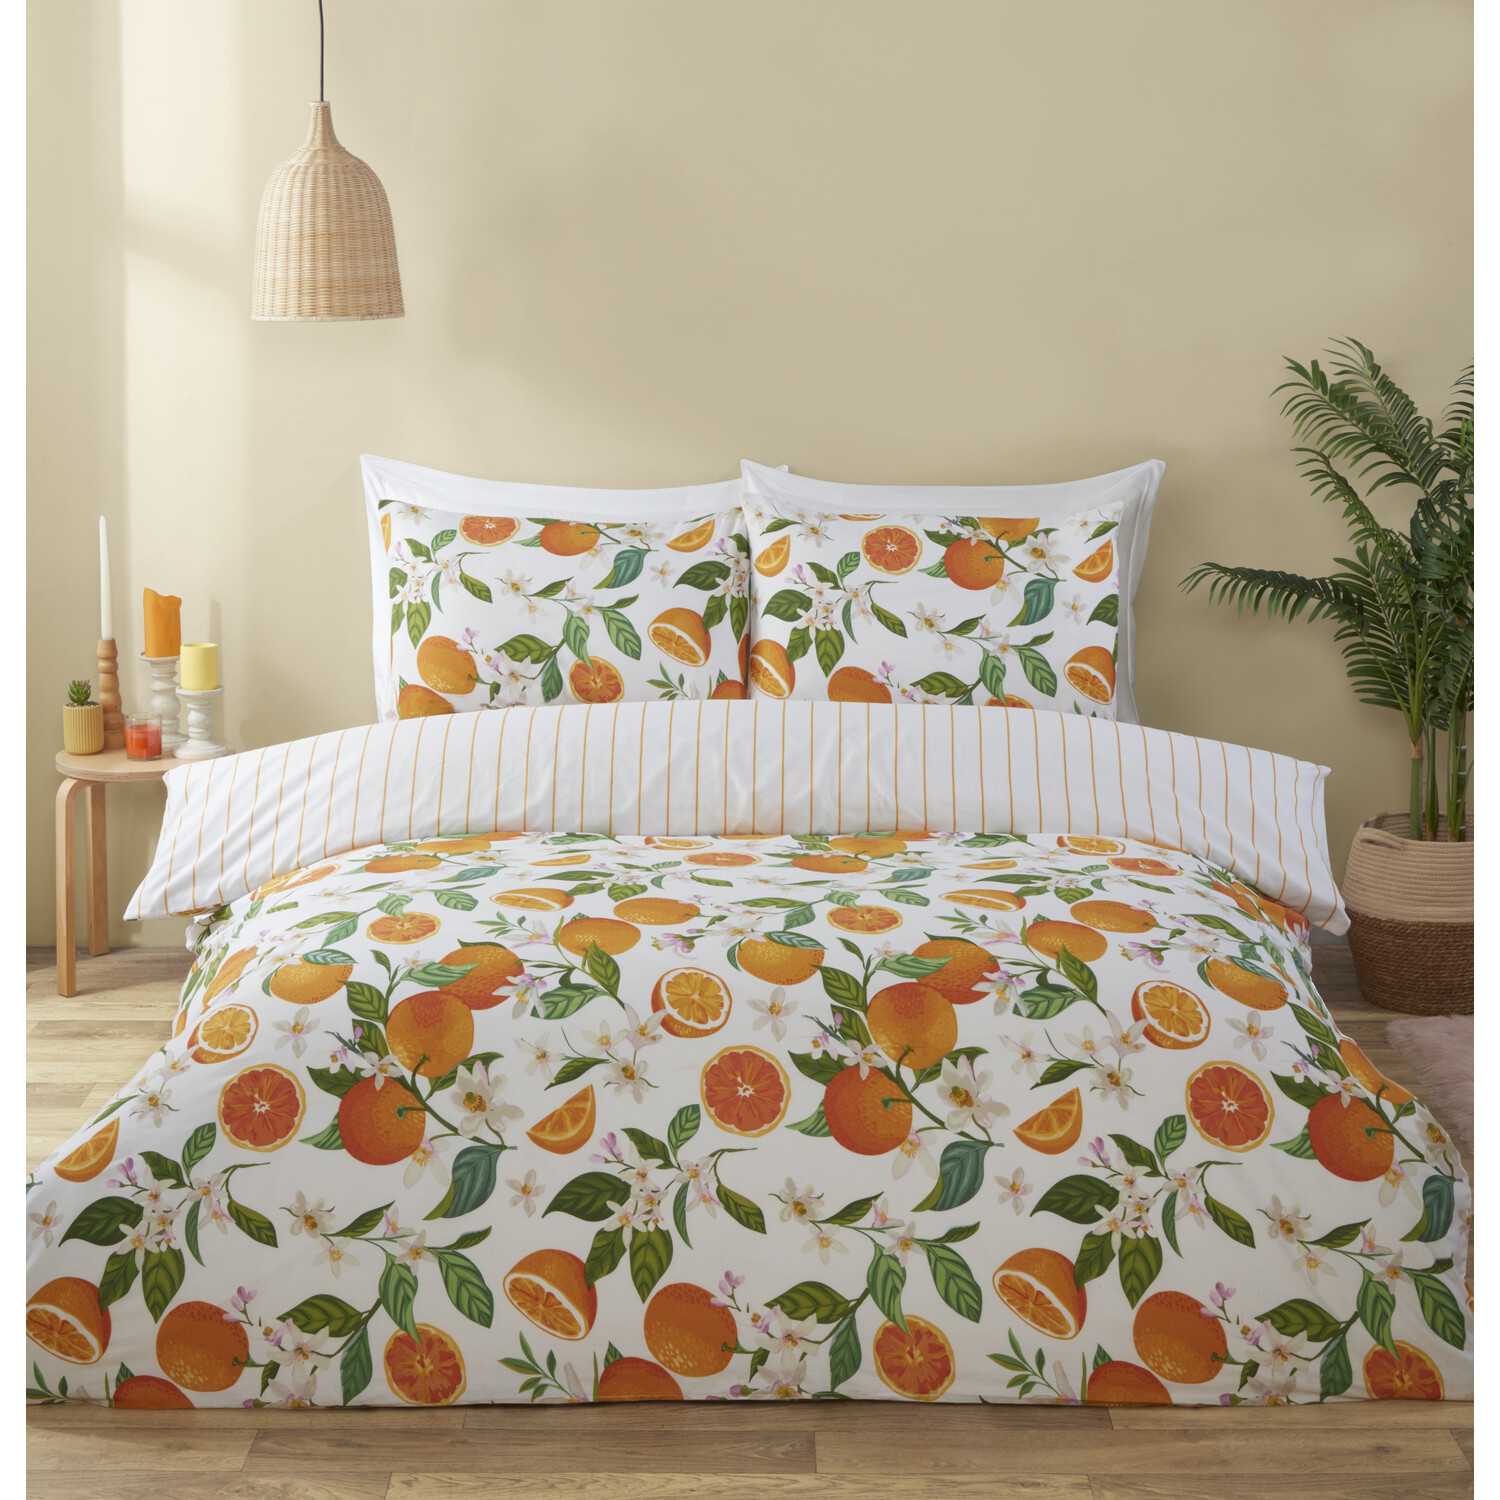 Seville Duvet Cover and Pillowcase Set - Orange / King Image 1